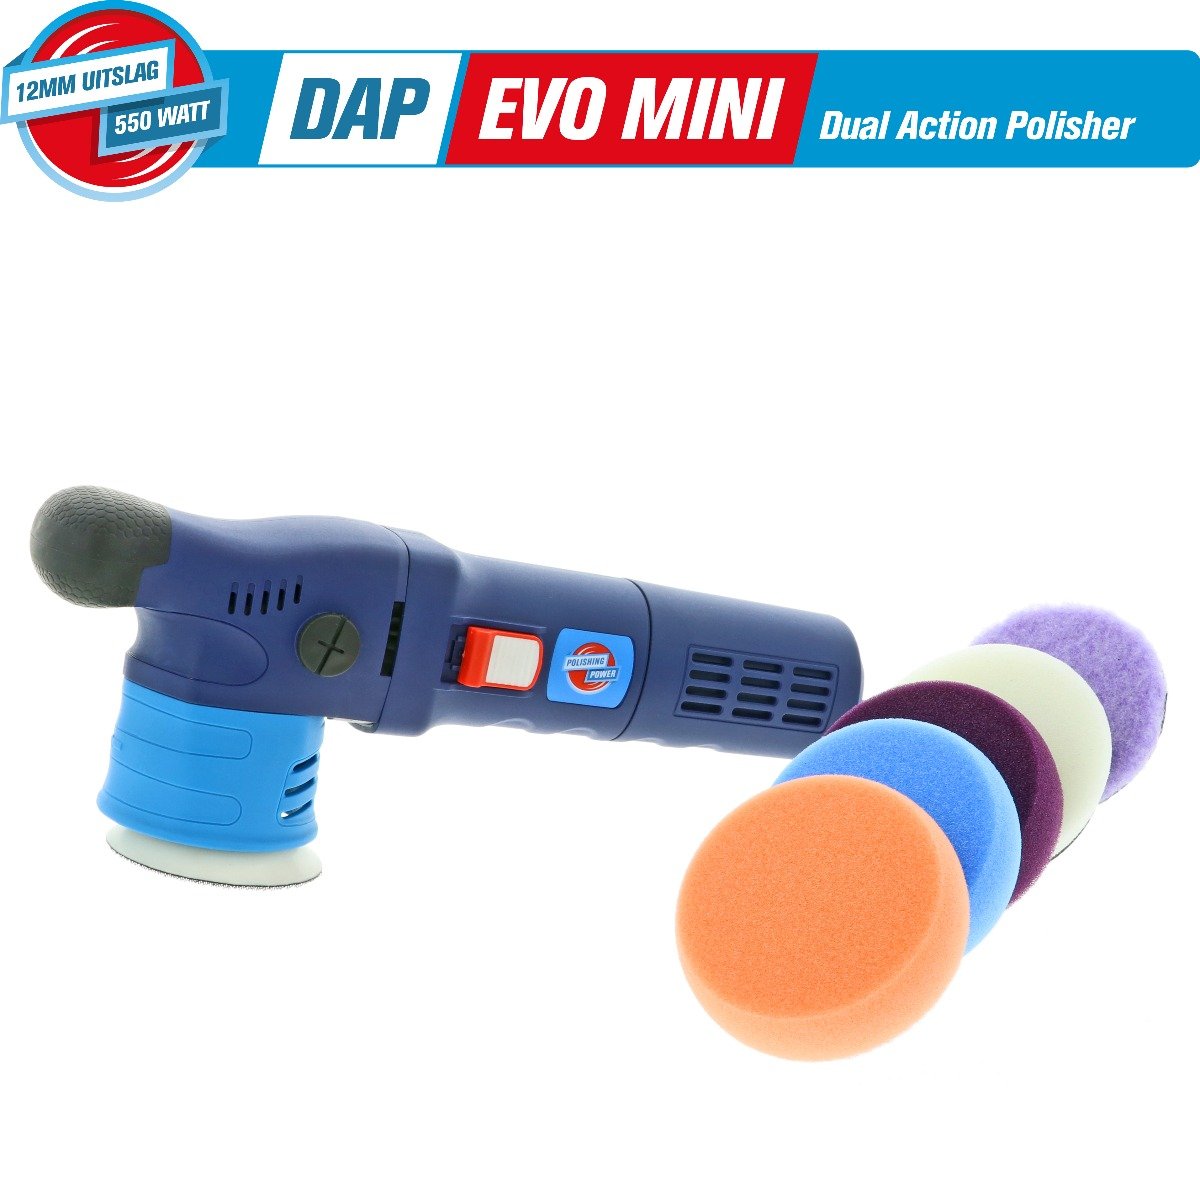 DAP EVO MINI 12mm D/A 550 Watt - First Edition Pre-Order Kit